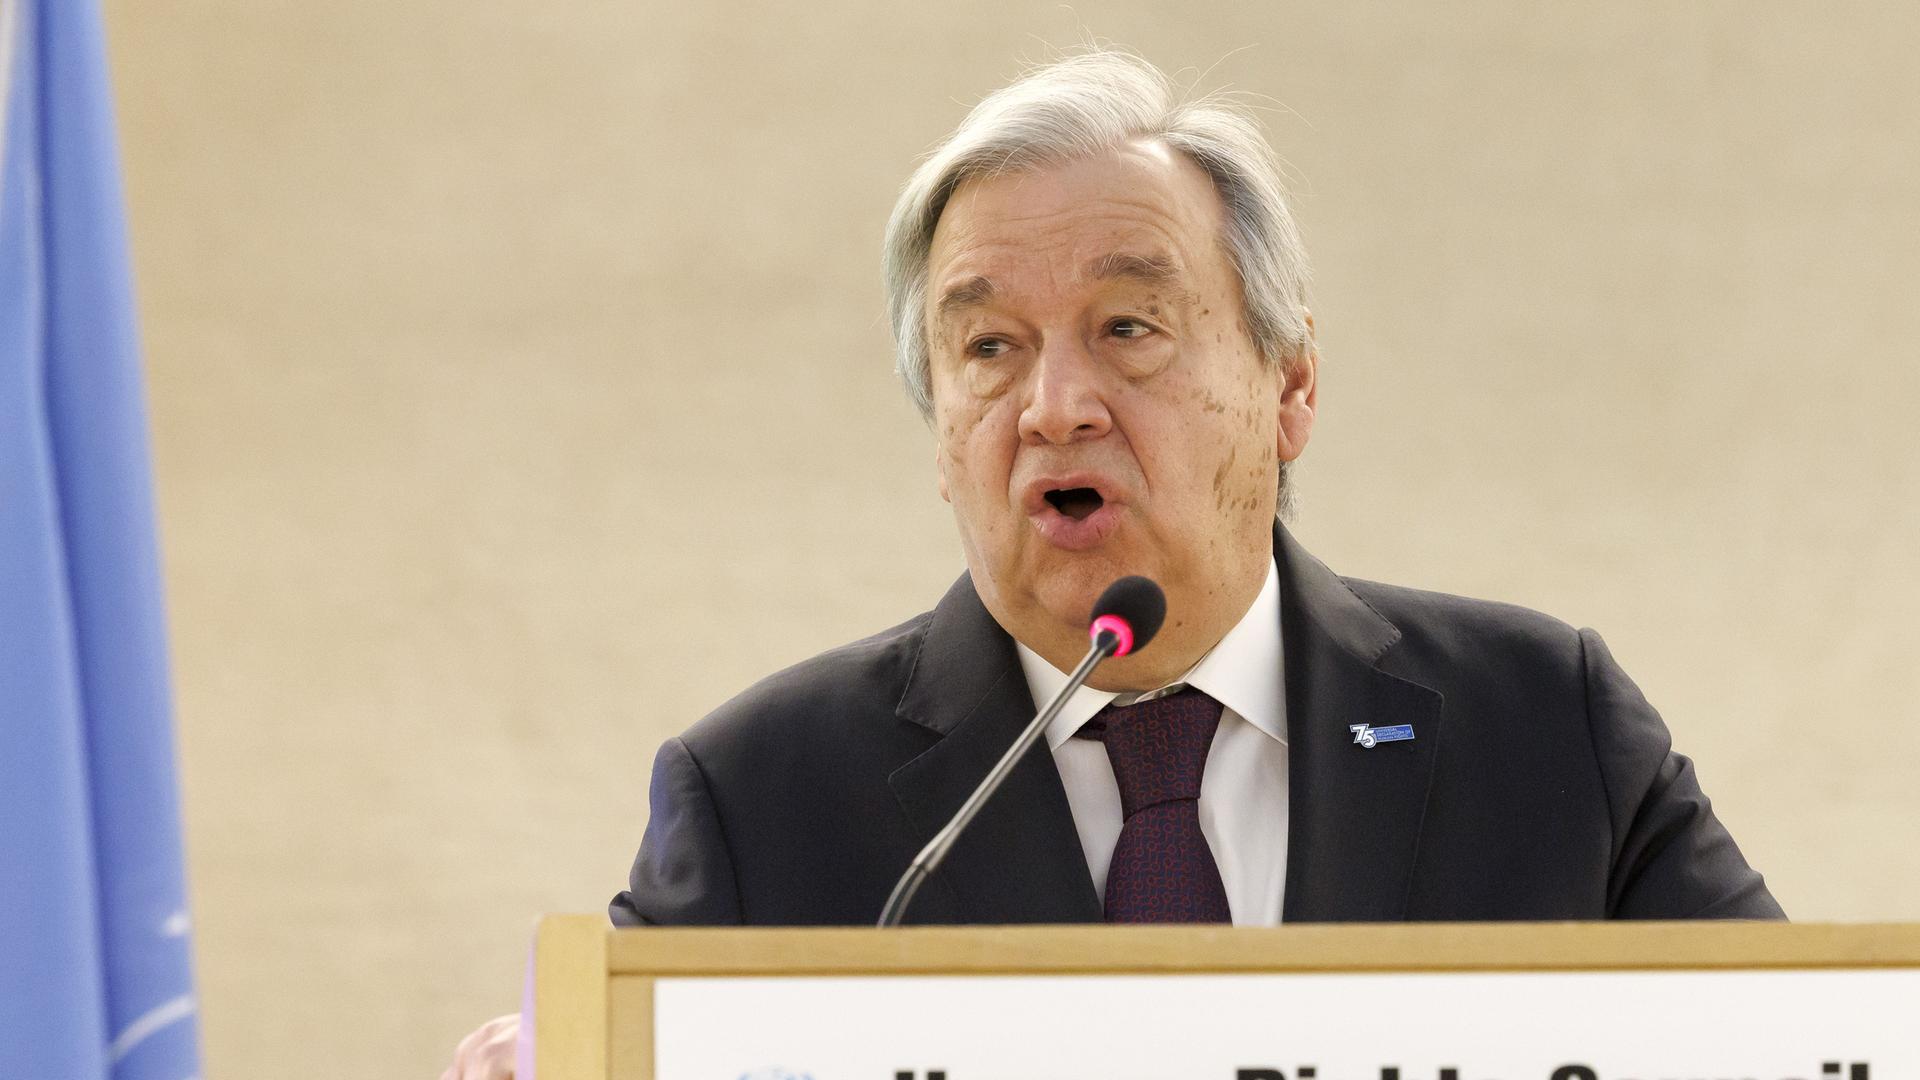 Antonio Guterres, UNO-Generalsekretär, spricht auf einer Konferenz.